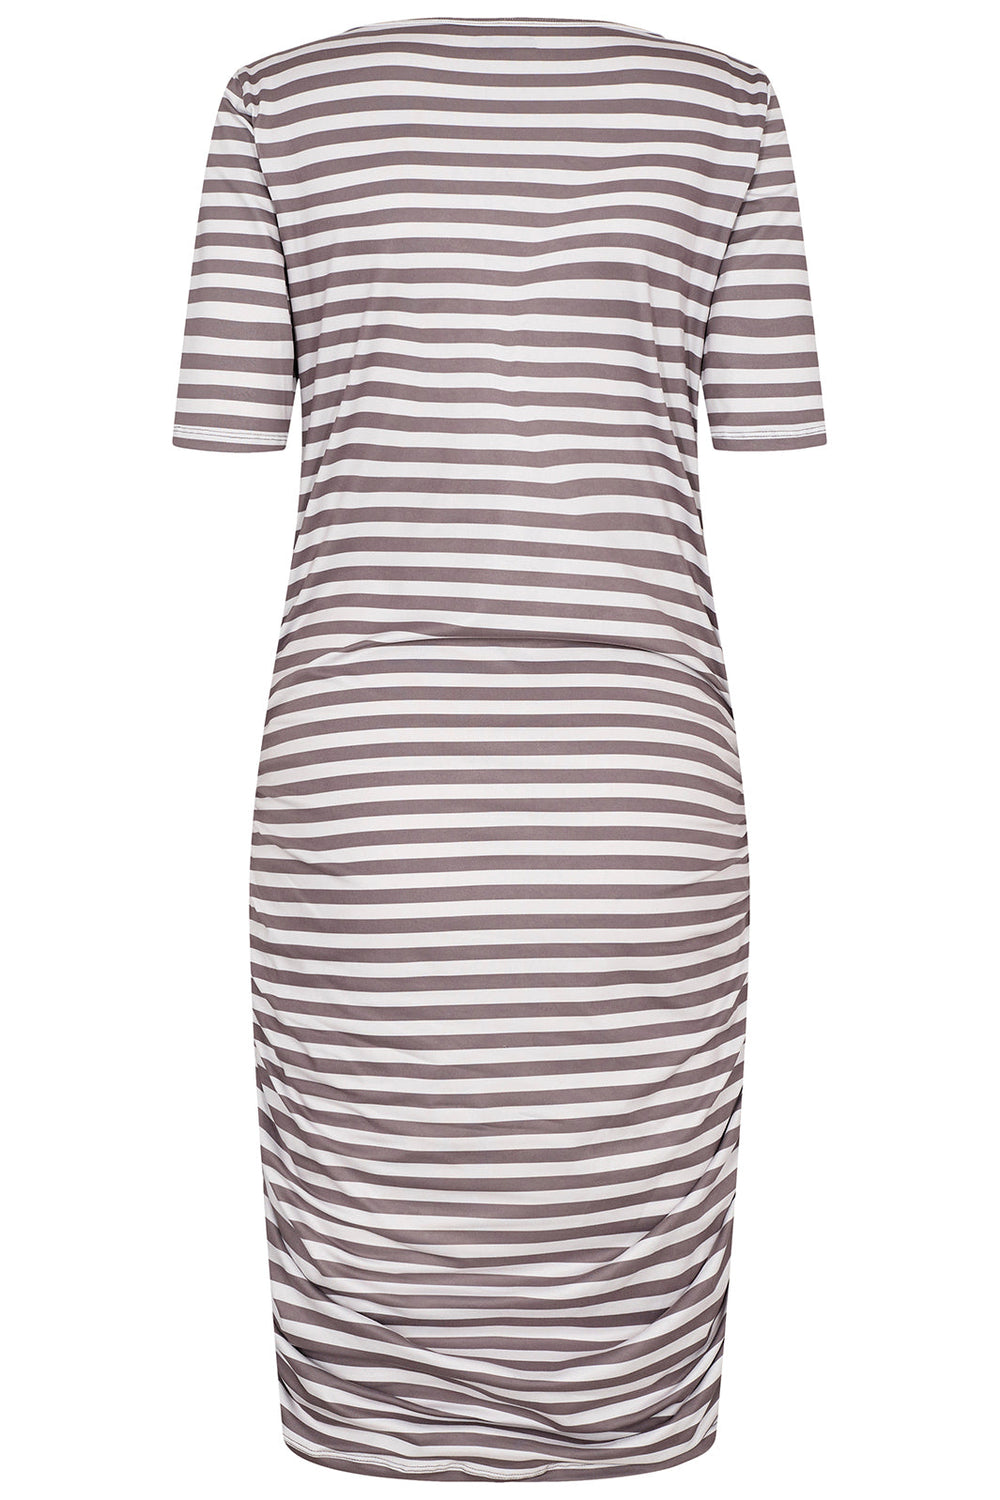 Forudbestilling - Liberte - Alma-Dress3 - Light Brown Creme Stripe (Start/Midt April) Kjoler 